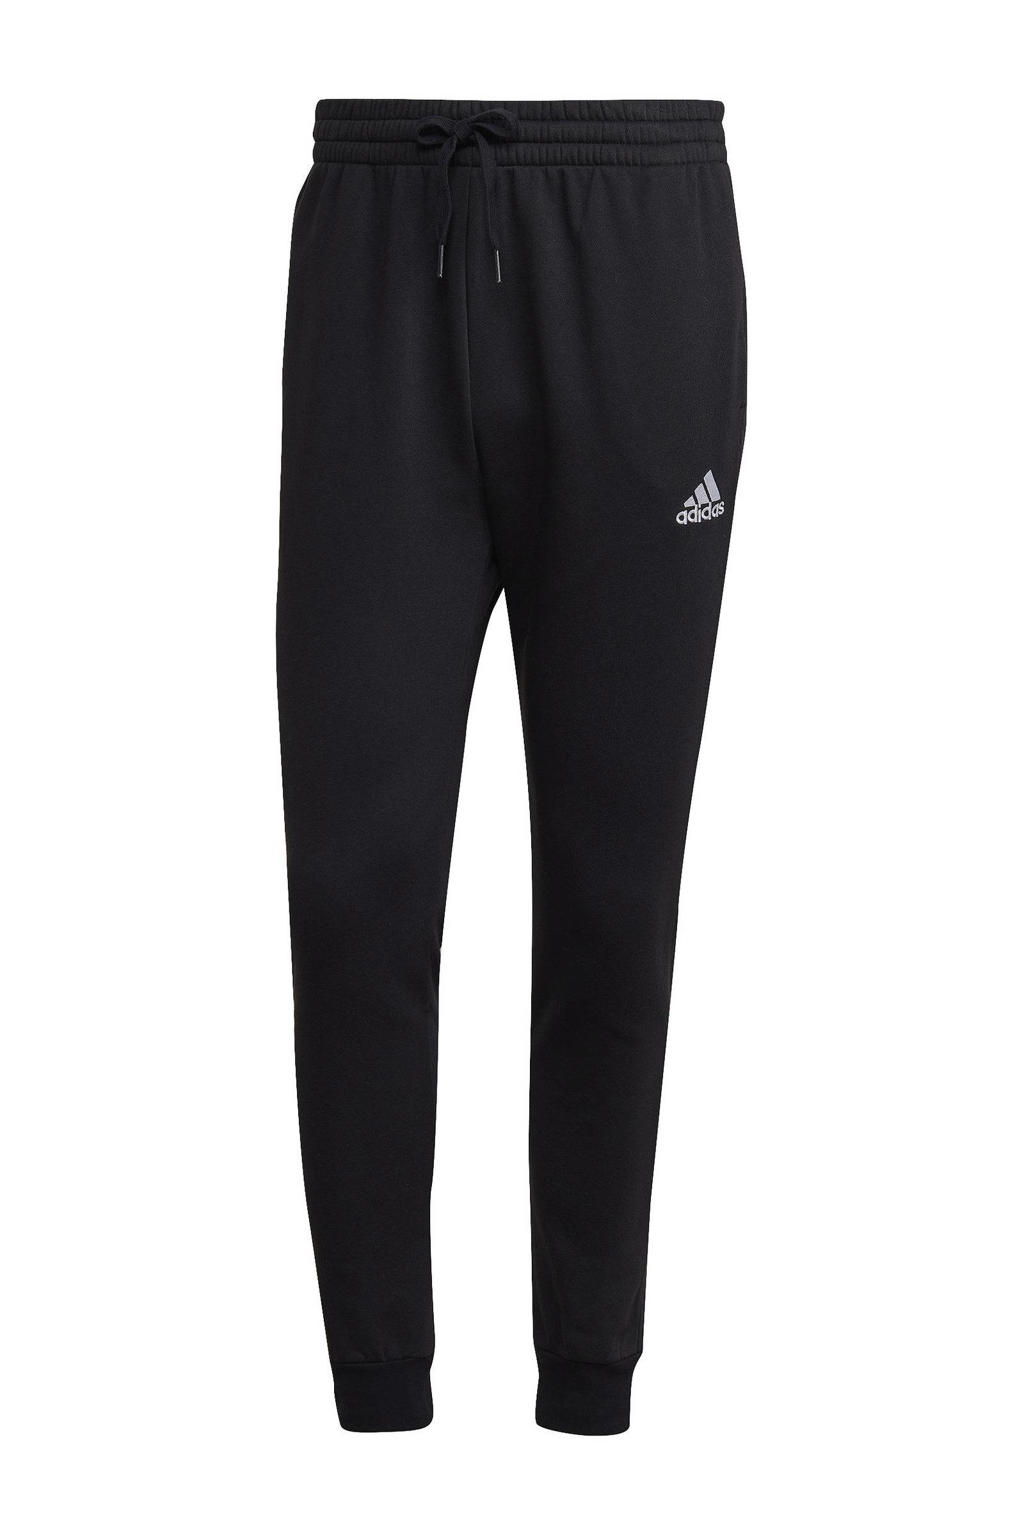 Zwarte heren adidas Performance joggingbroek van katoen met regular fit, elastische tailleband met koord en logo dessin